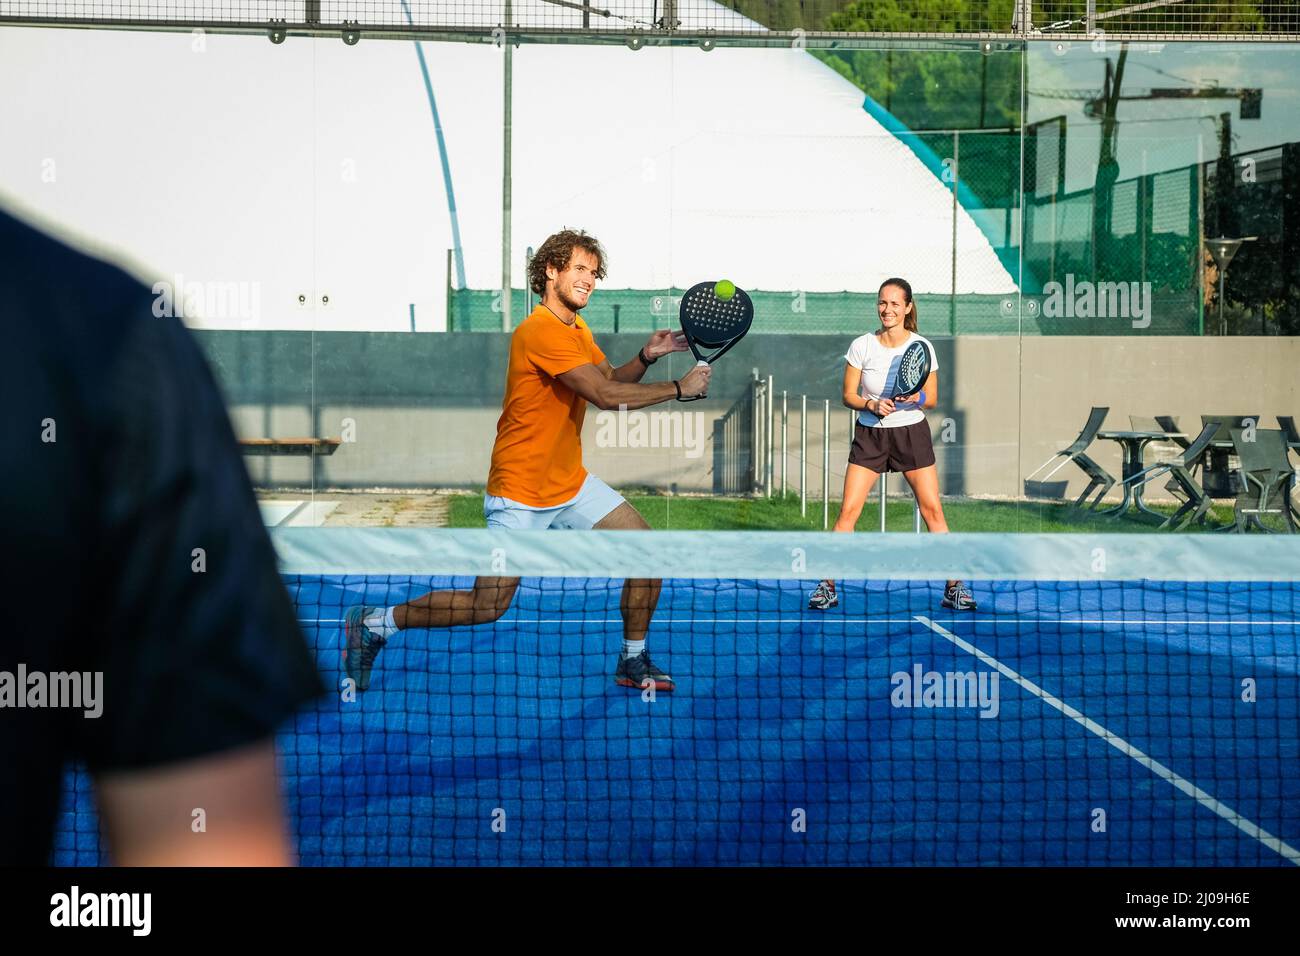 L'entraîneur enseigne aux jeunes comment jouer au padel sur un court de tennis extérieur - Mixte padel Match outdoorin un terrain de padel d'herbe bleue - Sport et amis conc Banque D'Images